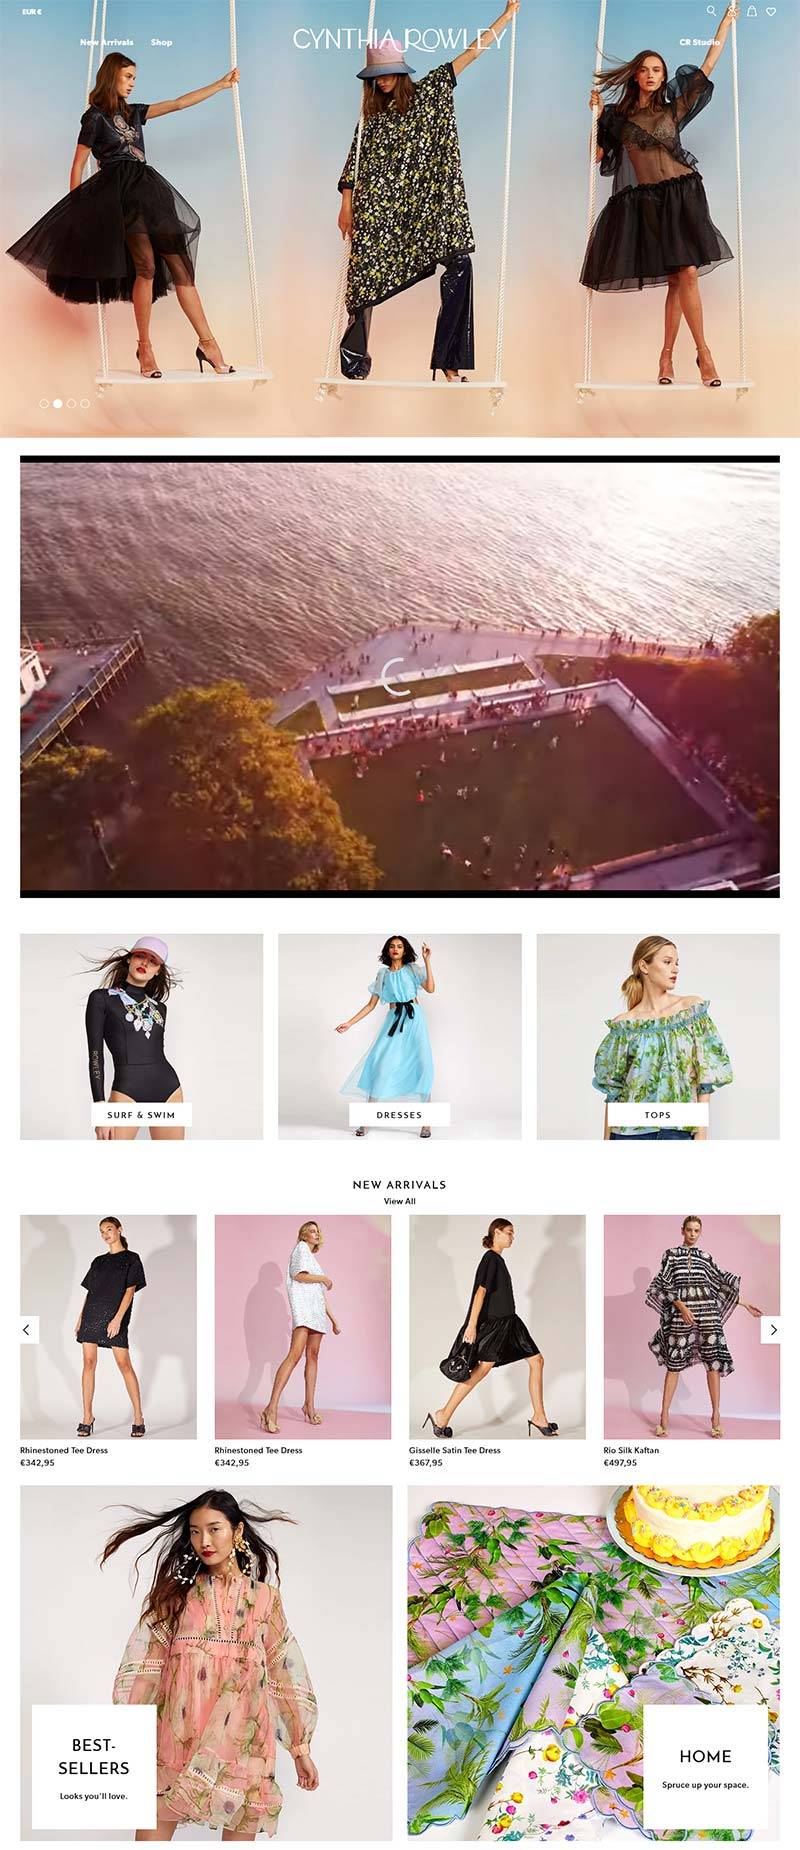 Cynthia Rowley 美国设计师女装配饰品牌购物网站